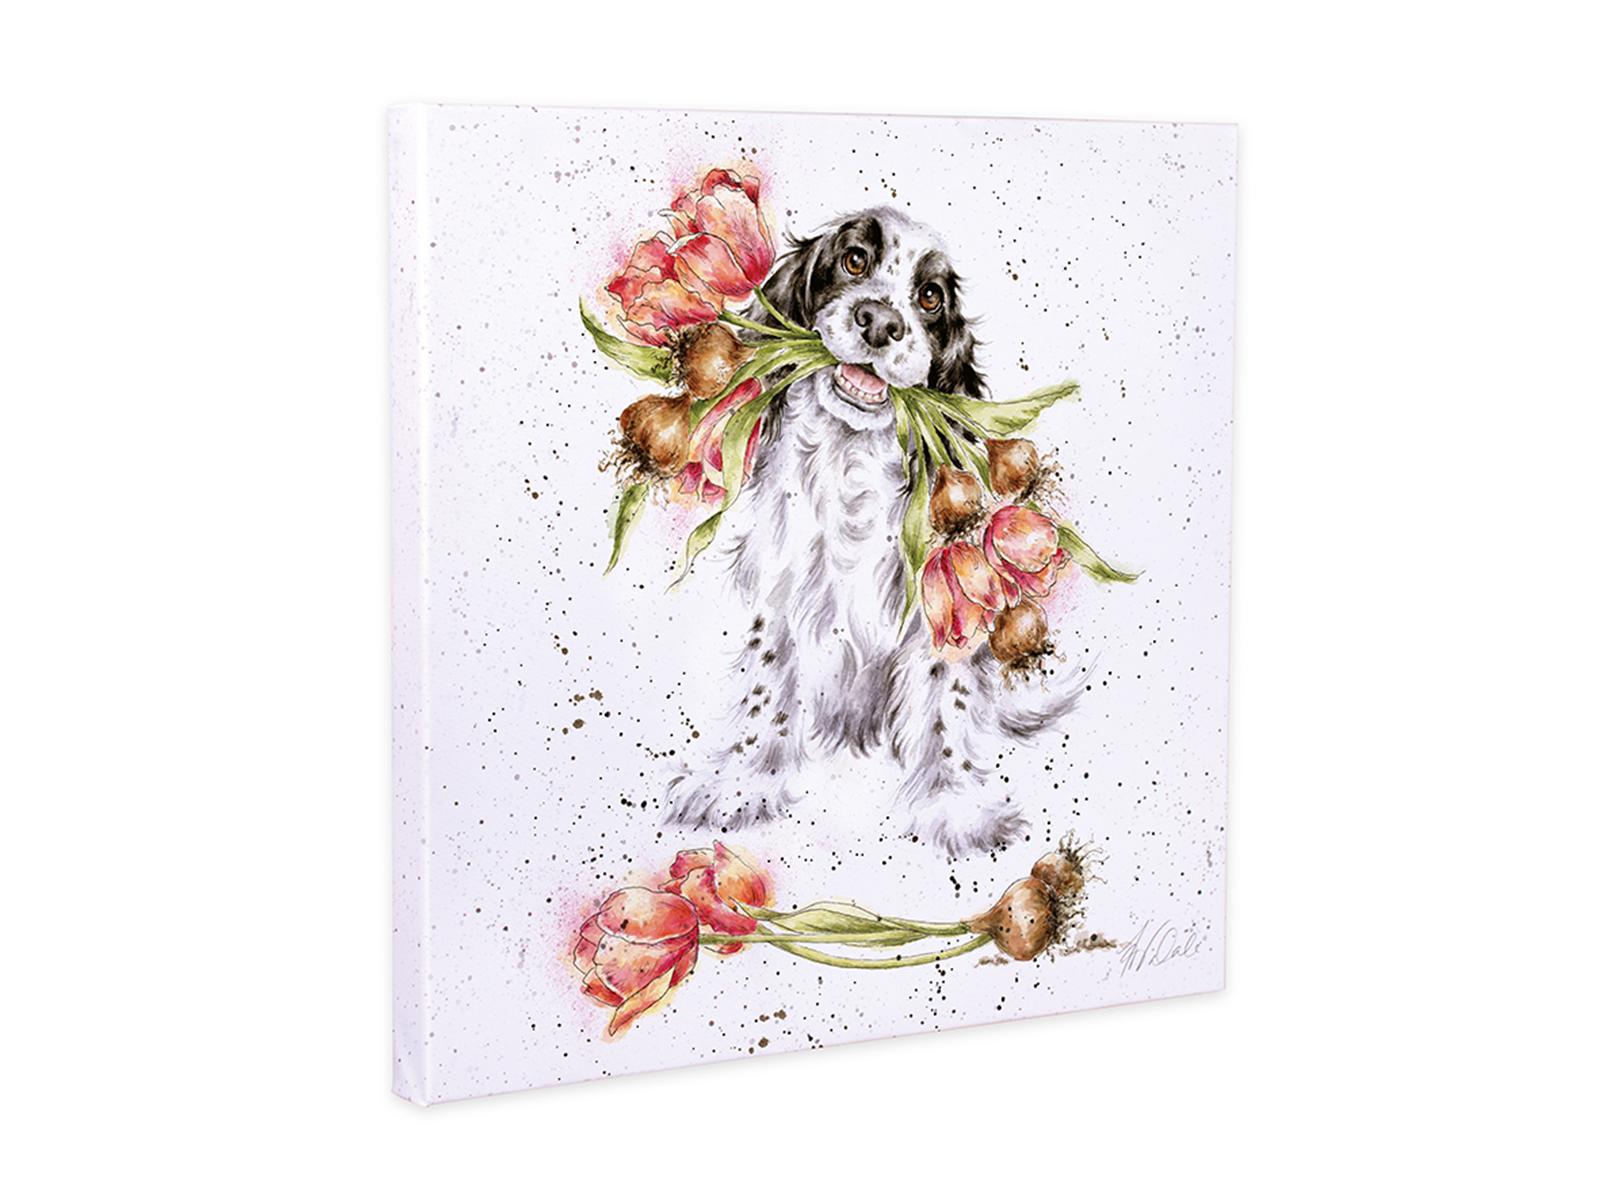 Wrendale Leinwand medium, Aufdruck Hund mit Blumen im Maul "Blooming with love", 50x50cm